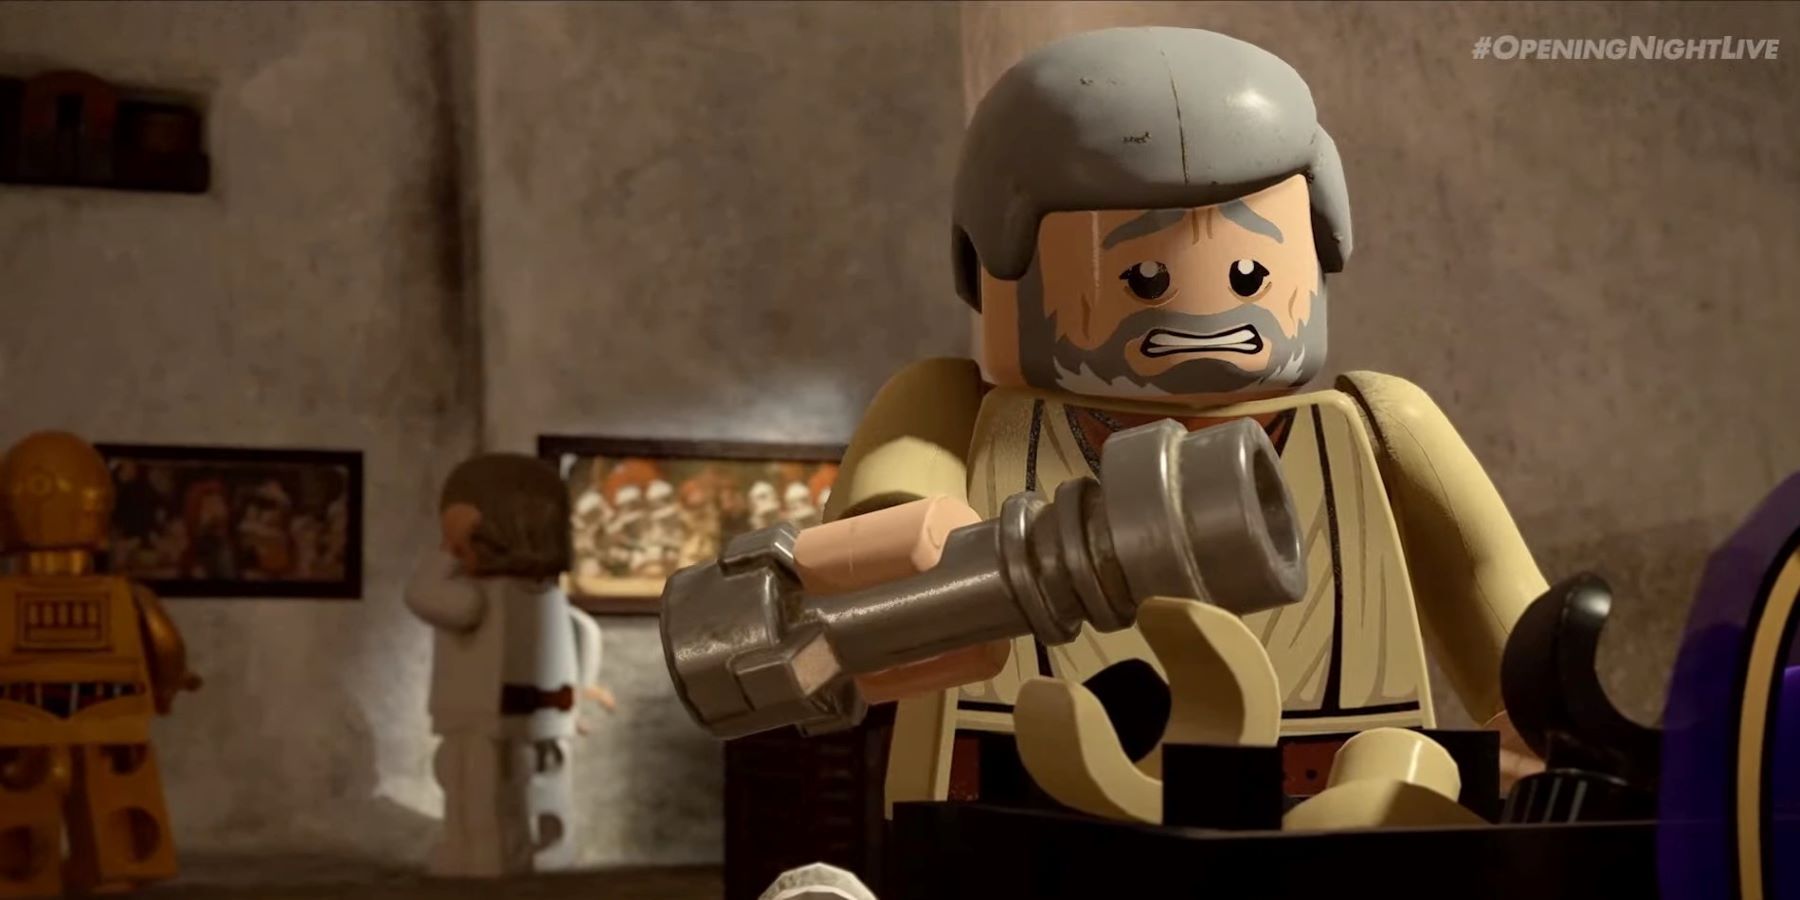 Obi-Wan Kenobi, Luke Skywalker, and C3PO at Kenobi's house in LEGO Star Wars: The Skywalker Saga